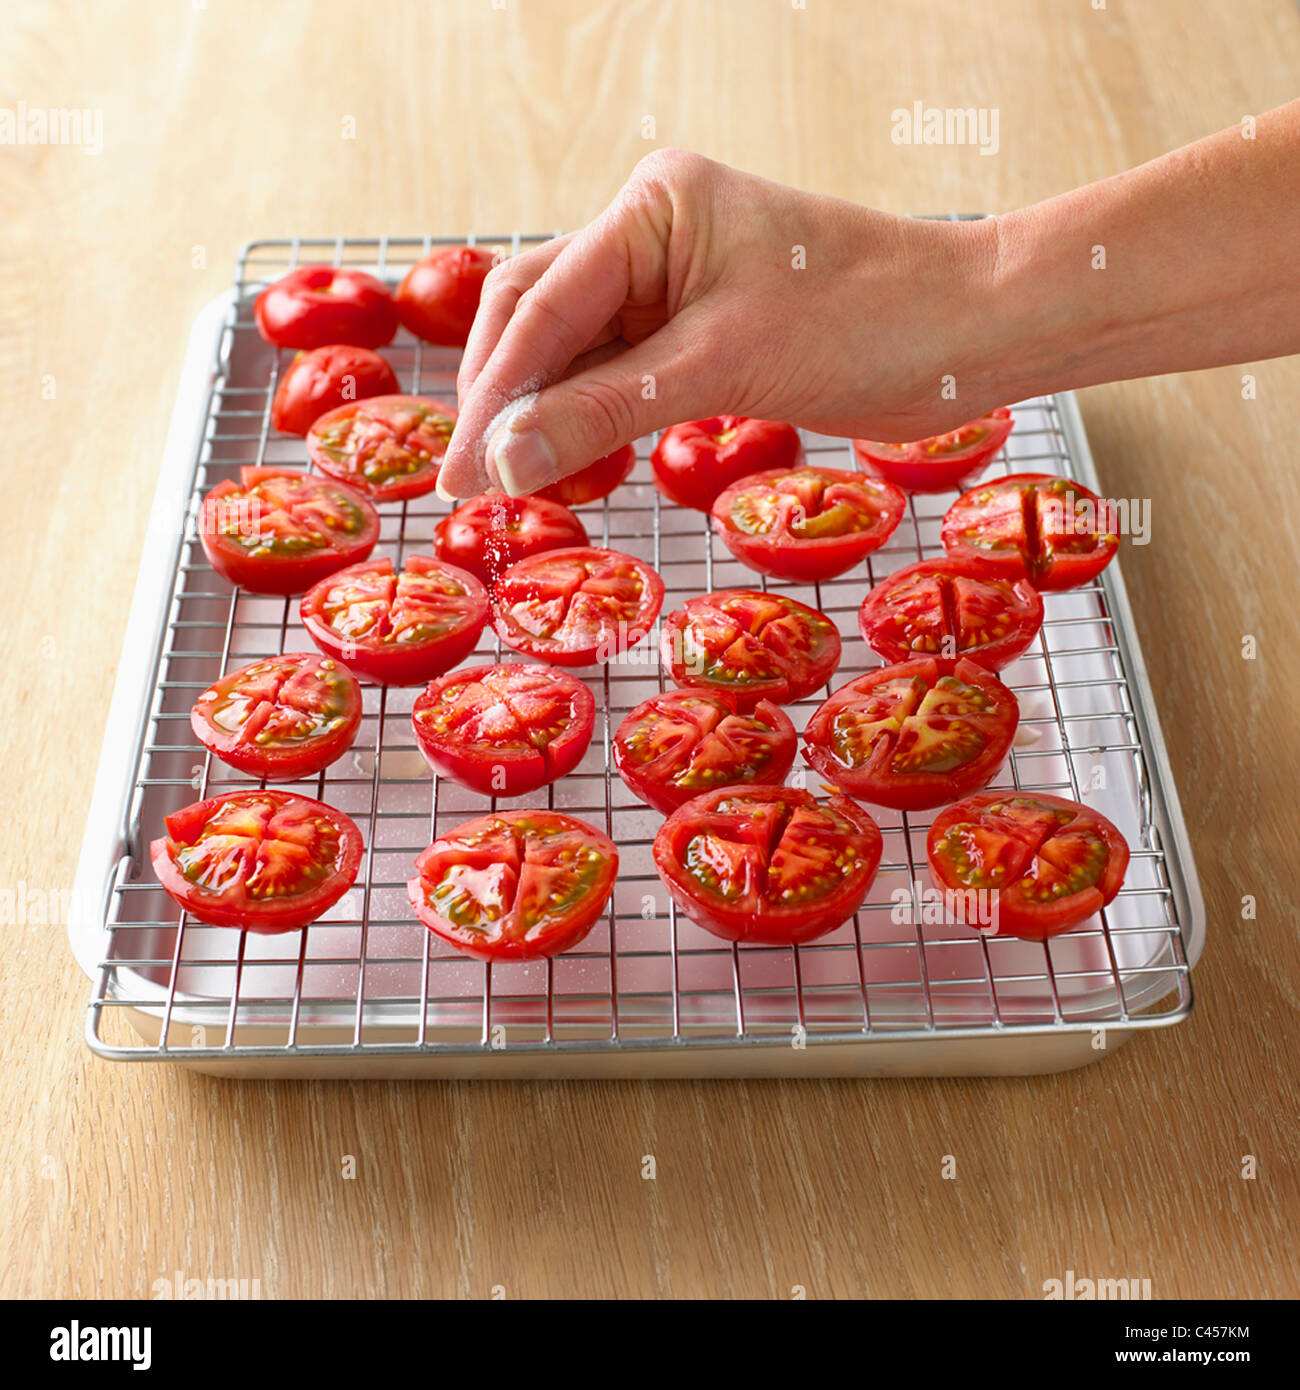 L'arrosage à la main du sel sur les moitiés de tomate, close-up Banque D'Images